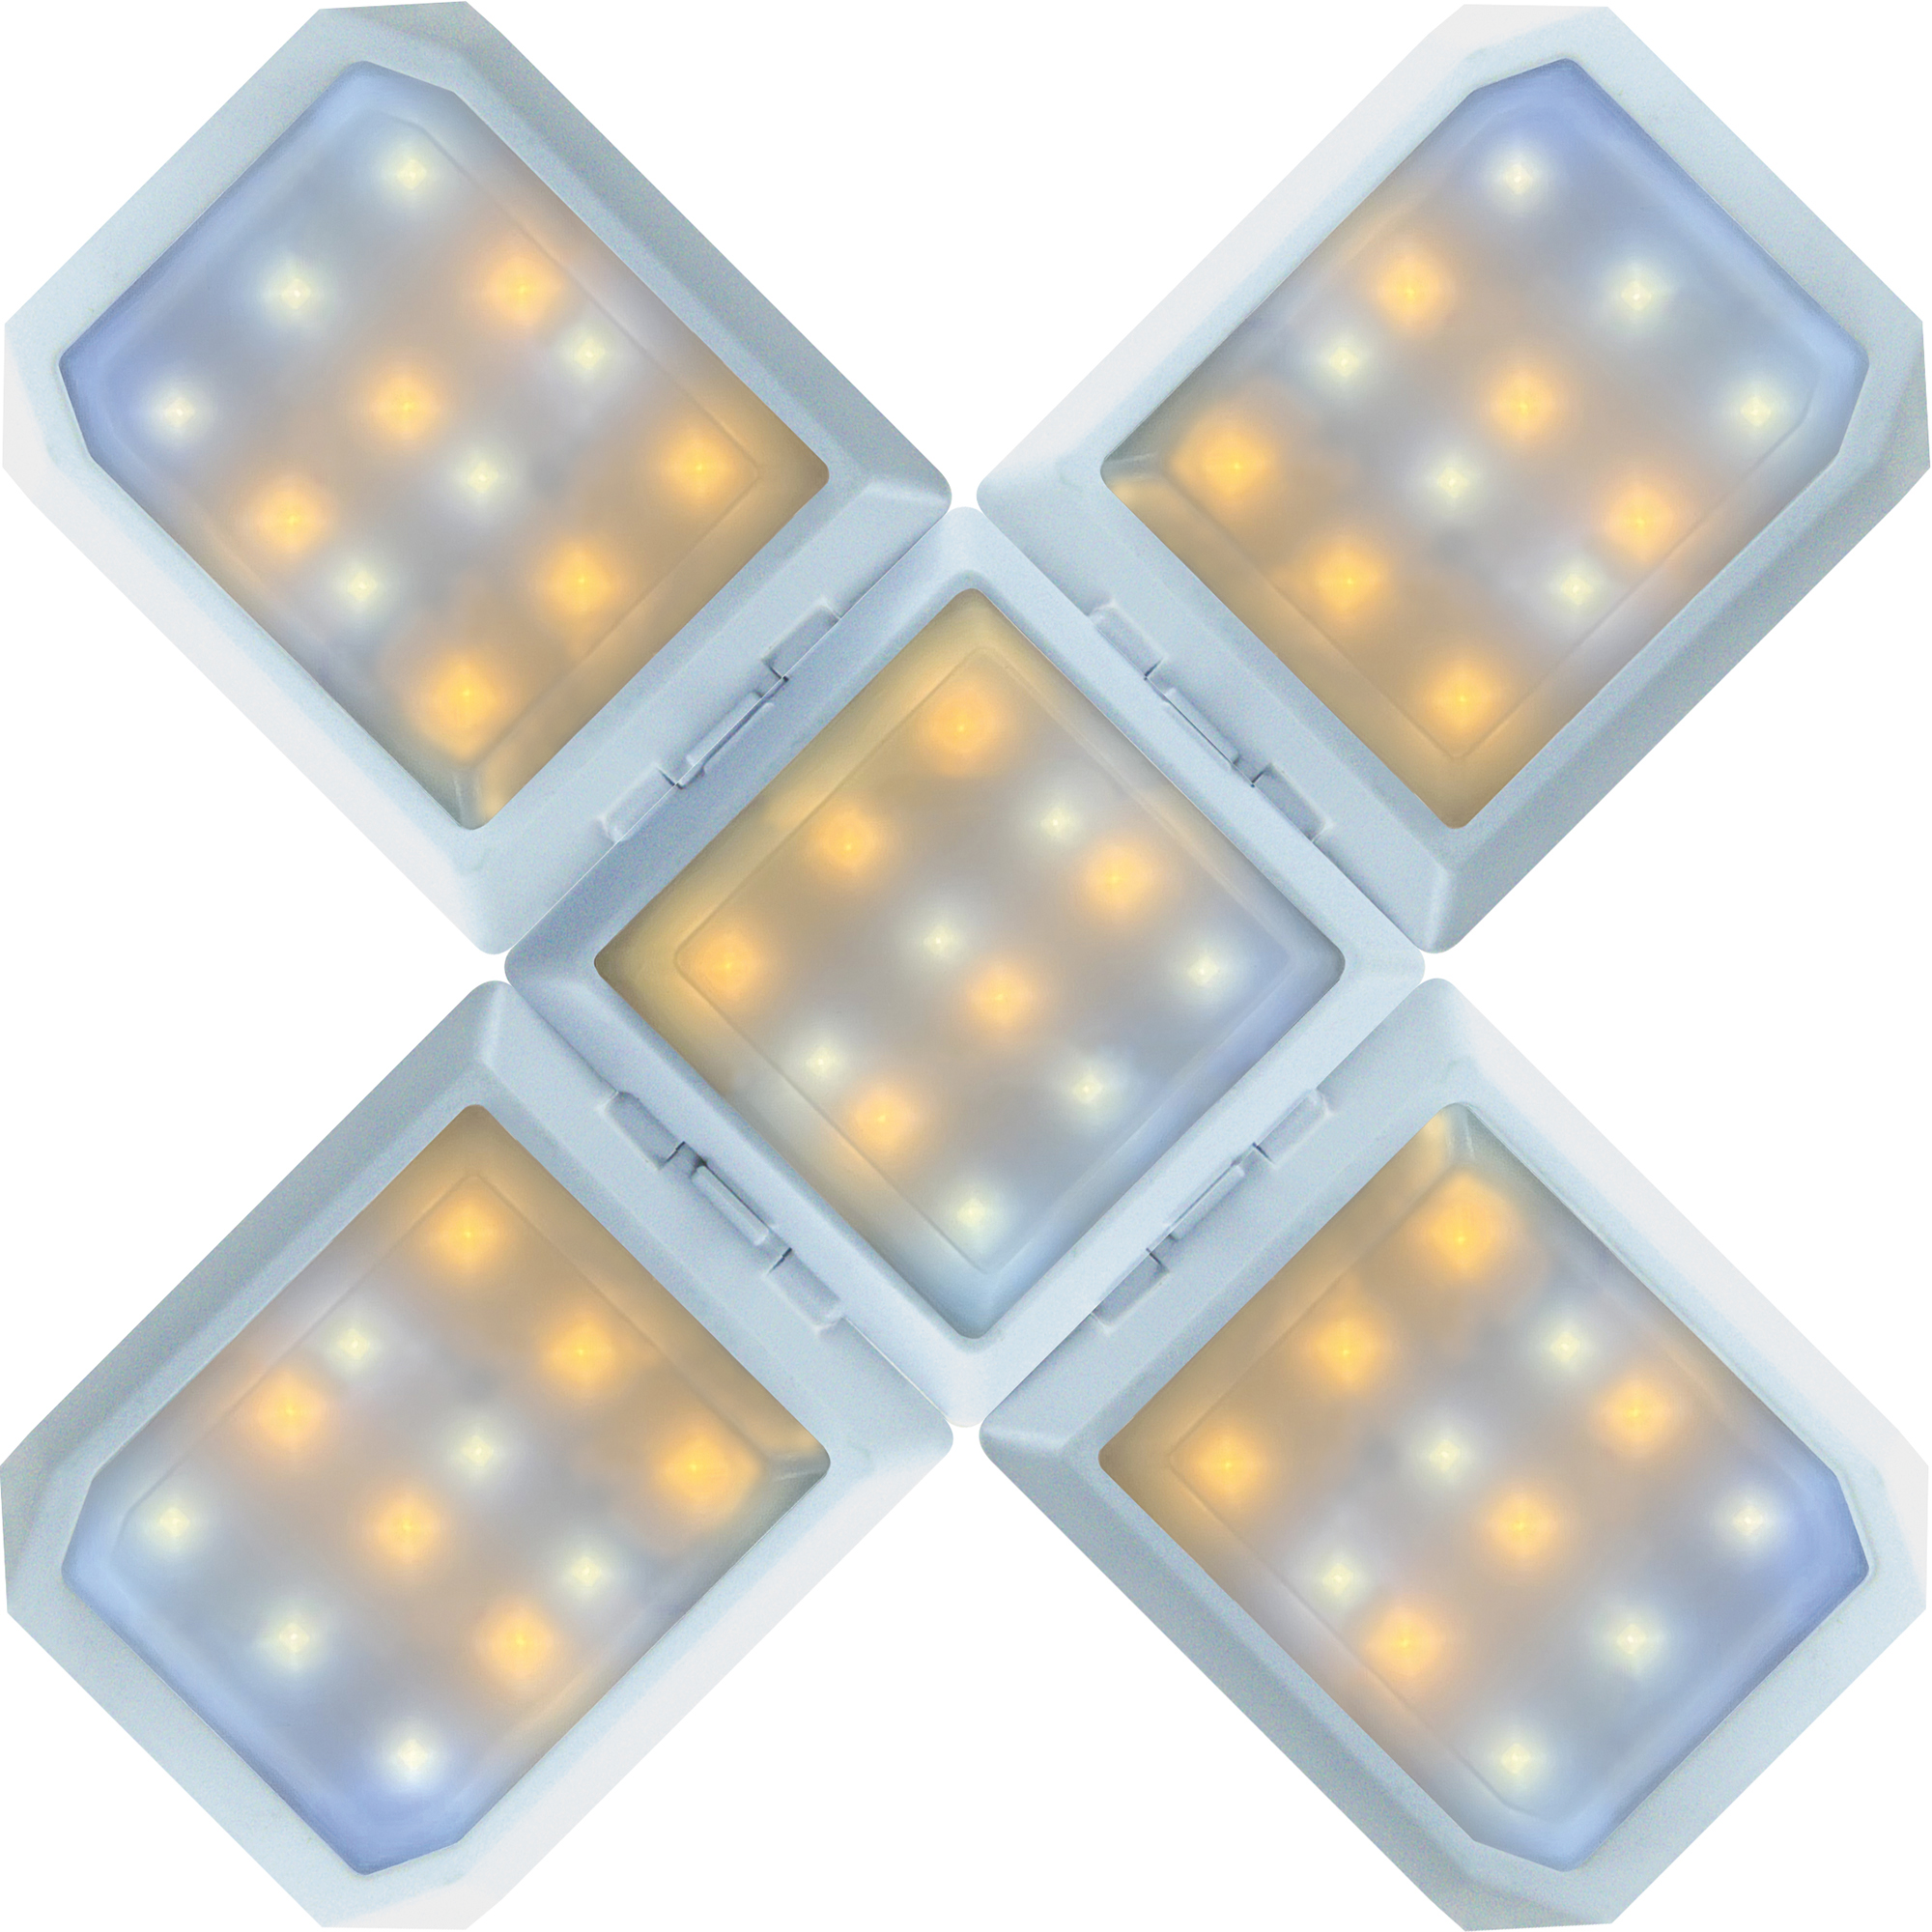 SCHWAIGER -SOLE0520- LED warmweiß, kaltweiß, mischlicht Leuchte